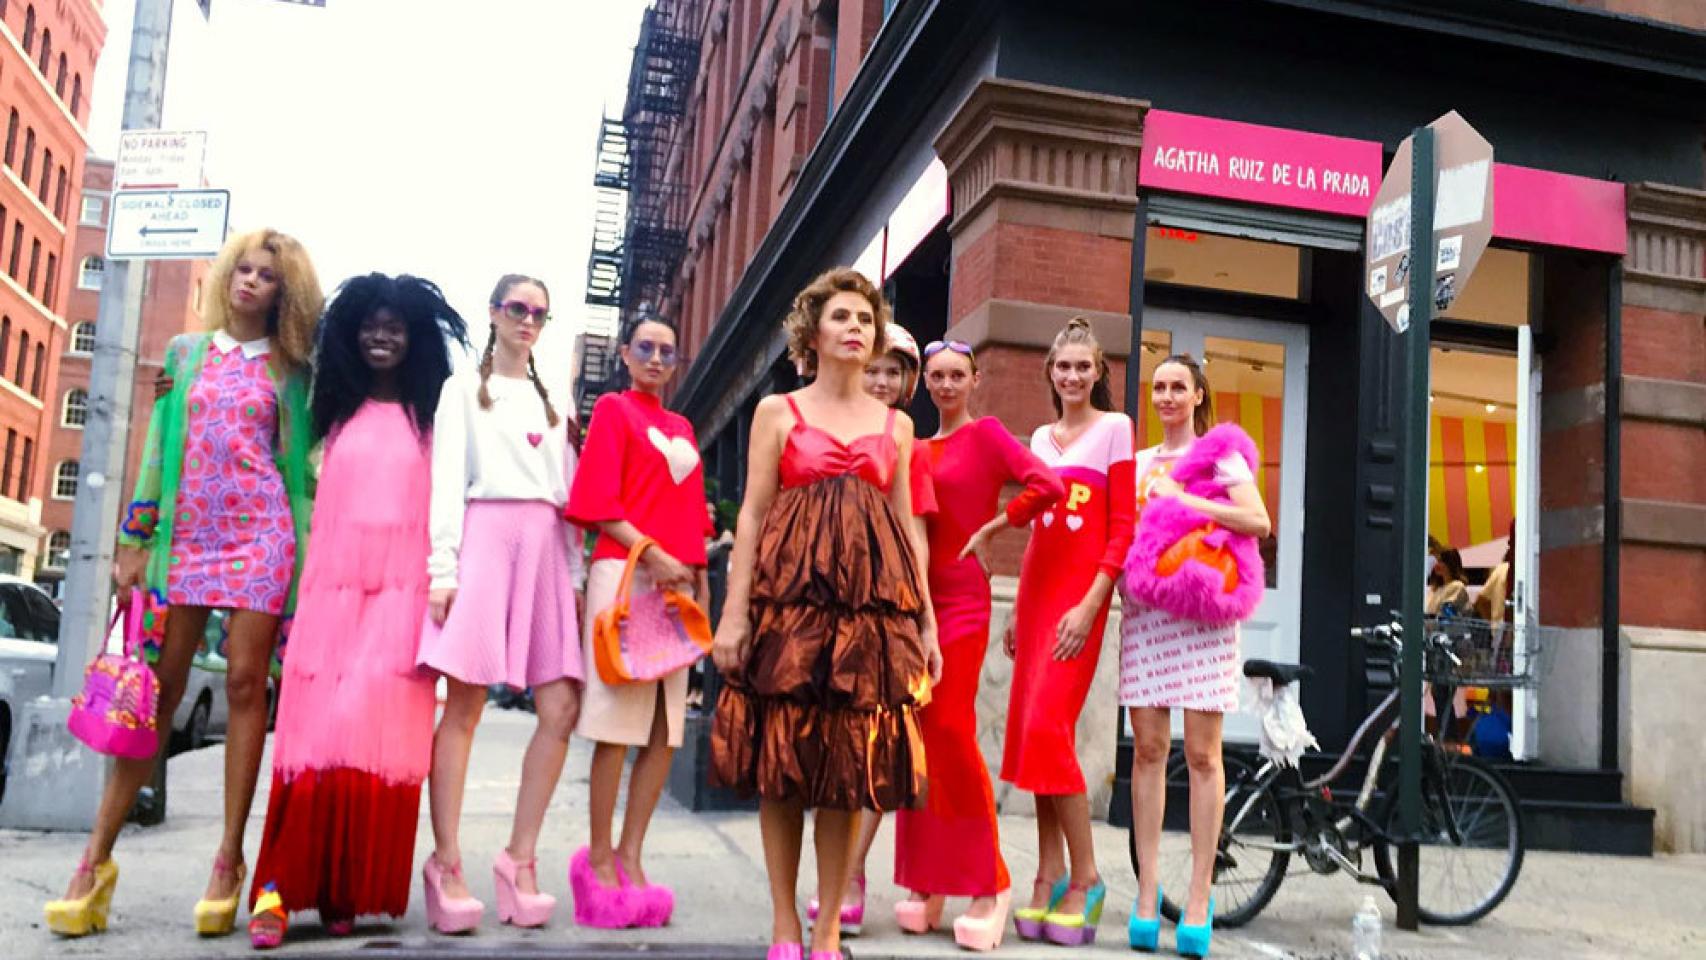 Agatha junto a las modelos en la puerta de su tienda de Nueva York